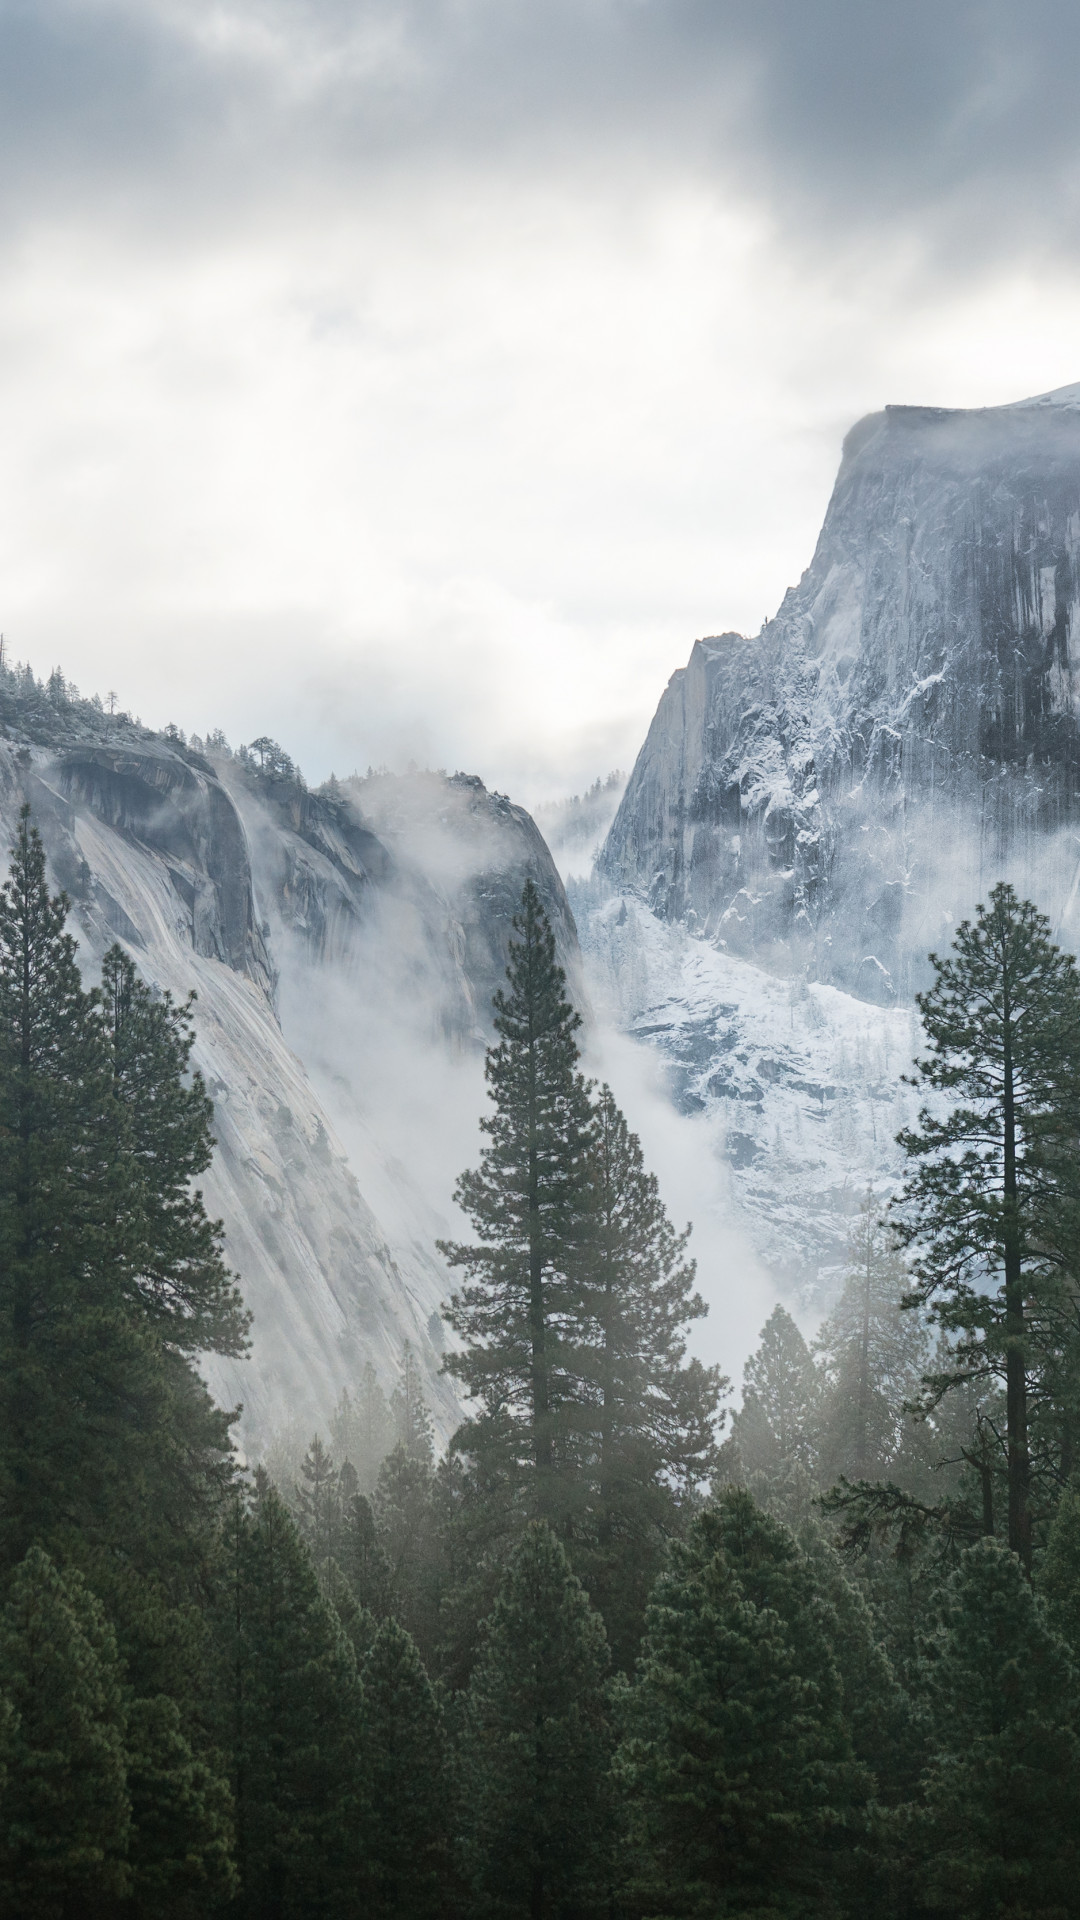 Hình nền Yosemite với độ phân giải 5K, 4K, 8K là một trong những đại diện của vẻ đẹp tự nhiên tuyệt vời của thiên nhiên. Với cảnh quan đáng ngưỡng mộ, hình nền này sẽ khiến cho bạn cảm thấy bình yên và thư giãn sau một ngày làm việc mệt mỏi.